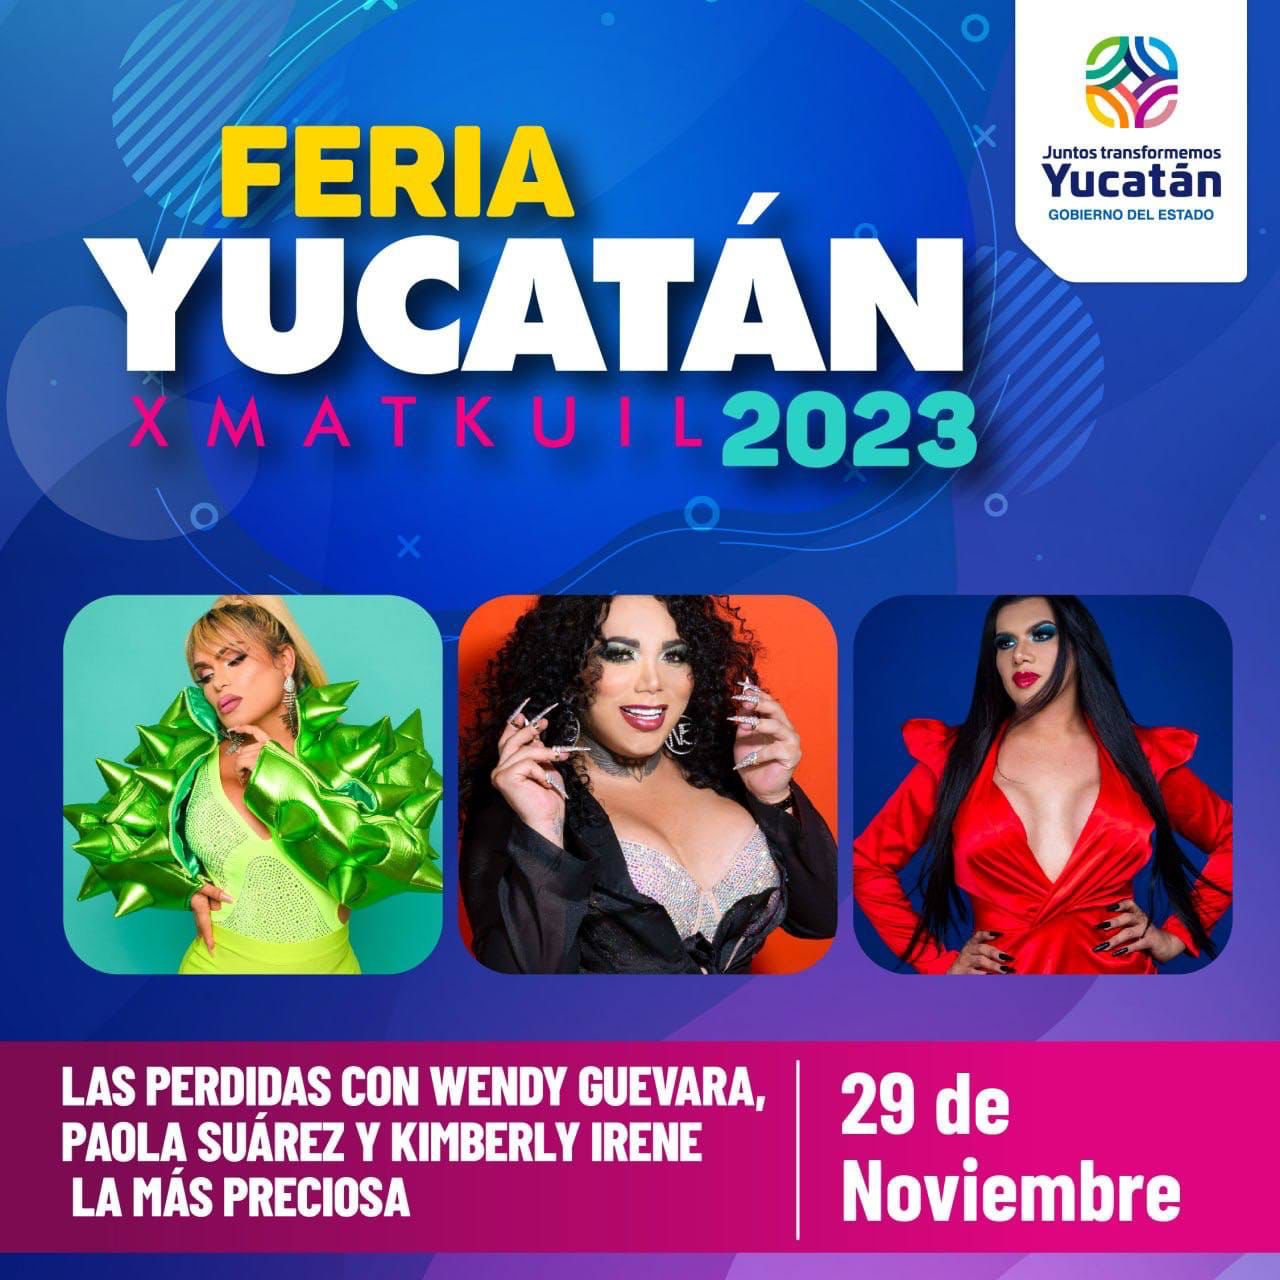 Feria Yucatán Xmatkuil 2023 fiesta y alegría para toda la familia